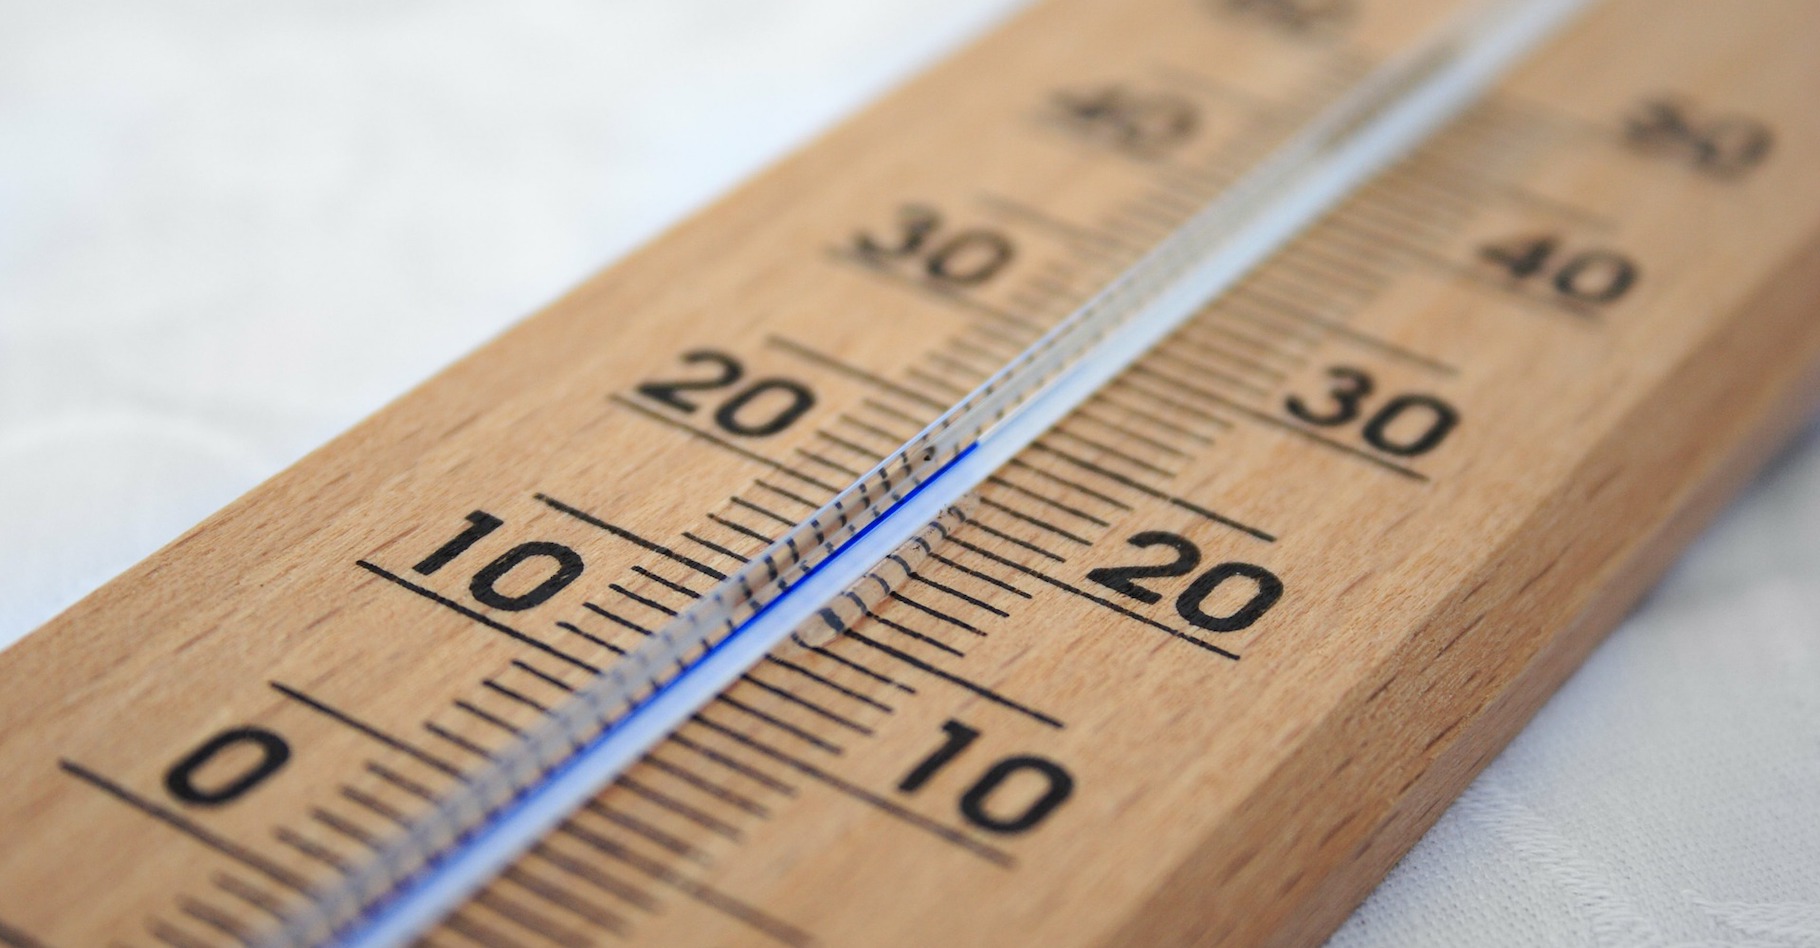 Le degré Celsius est l’unité de mesure de la température employée dans la vie quotidienne. © PublicDomainPictures, Pixabay, CC0 Creative Commons